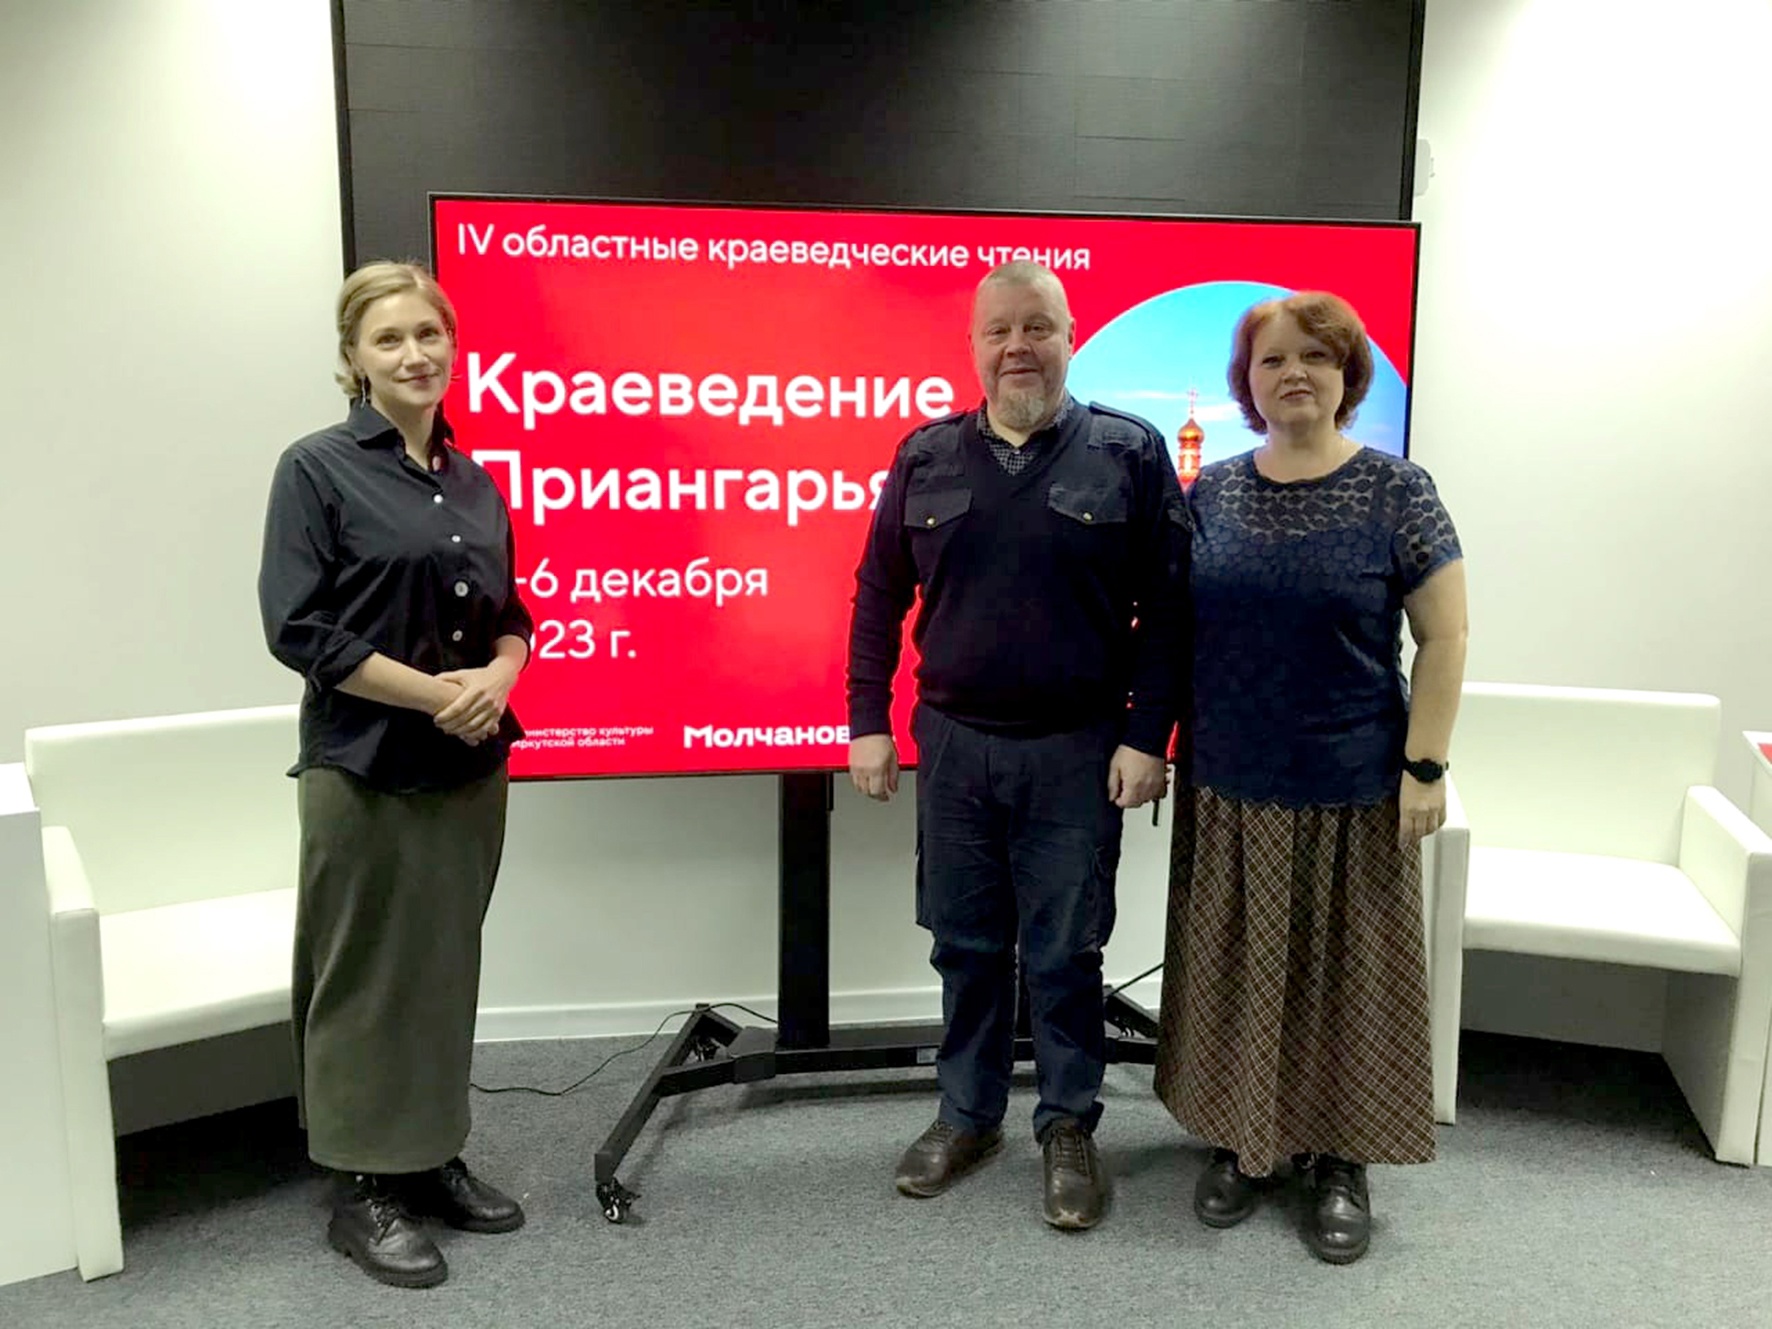 Сотрудники краеведческого музея приняли участие в IV областных краеведческих чтениях «Краеведение Приангарья»